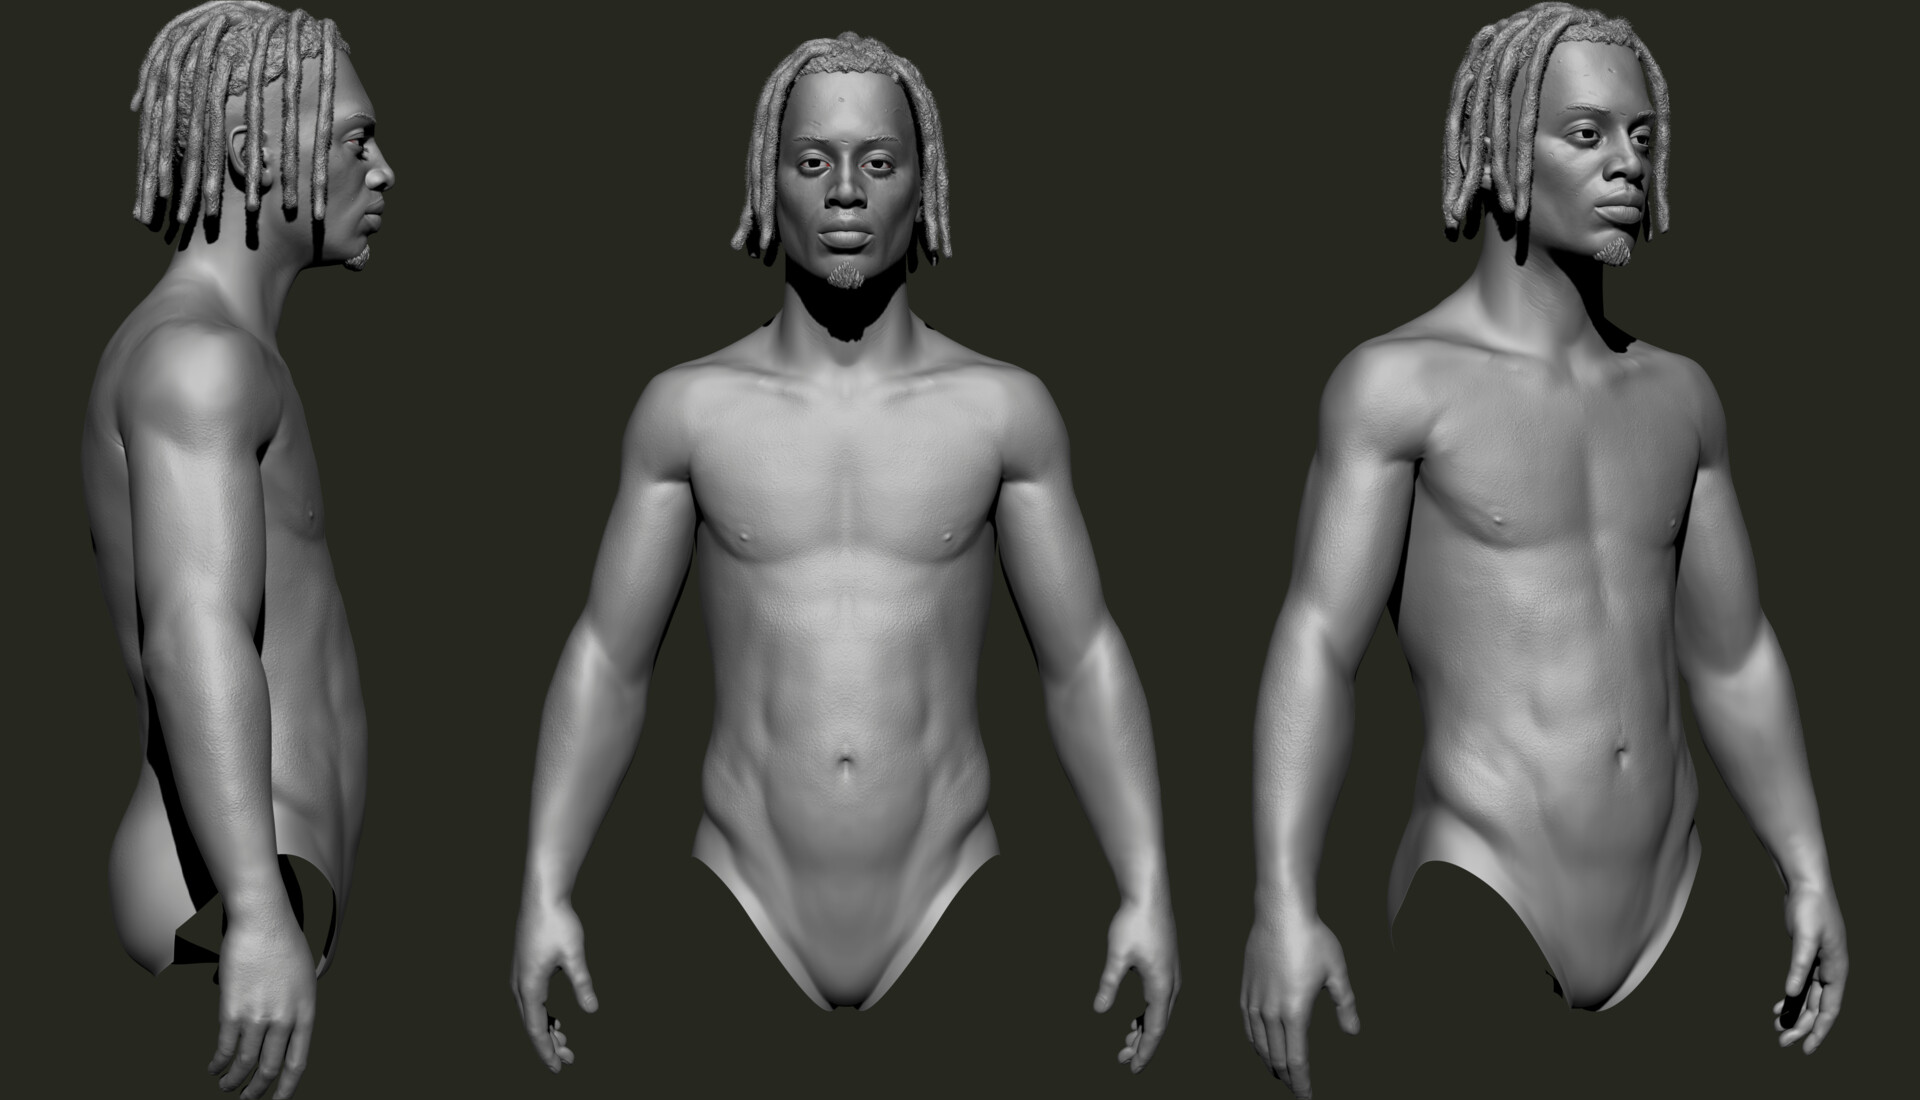 ArtStation - 3D model of NY rapper 'Playboi carti'